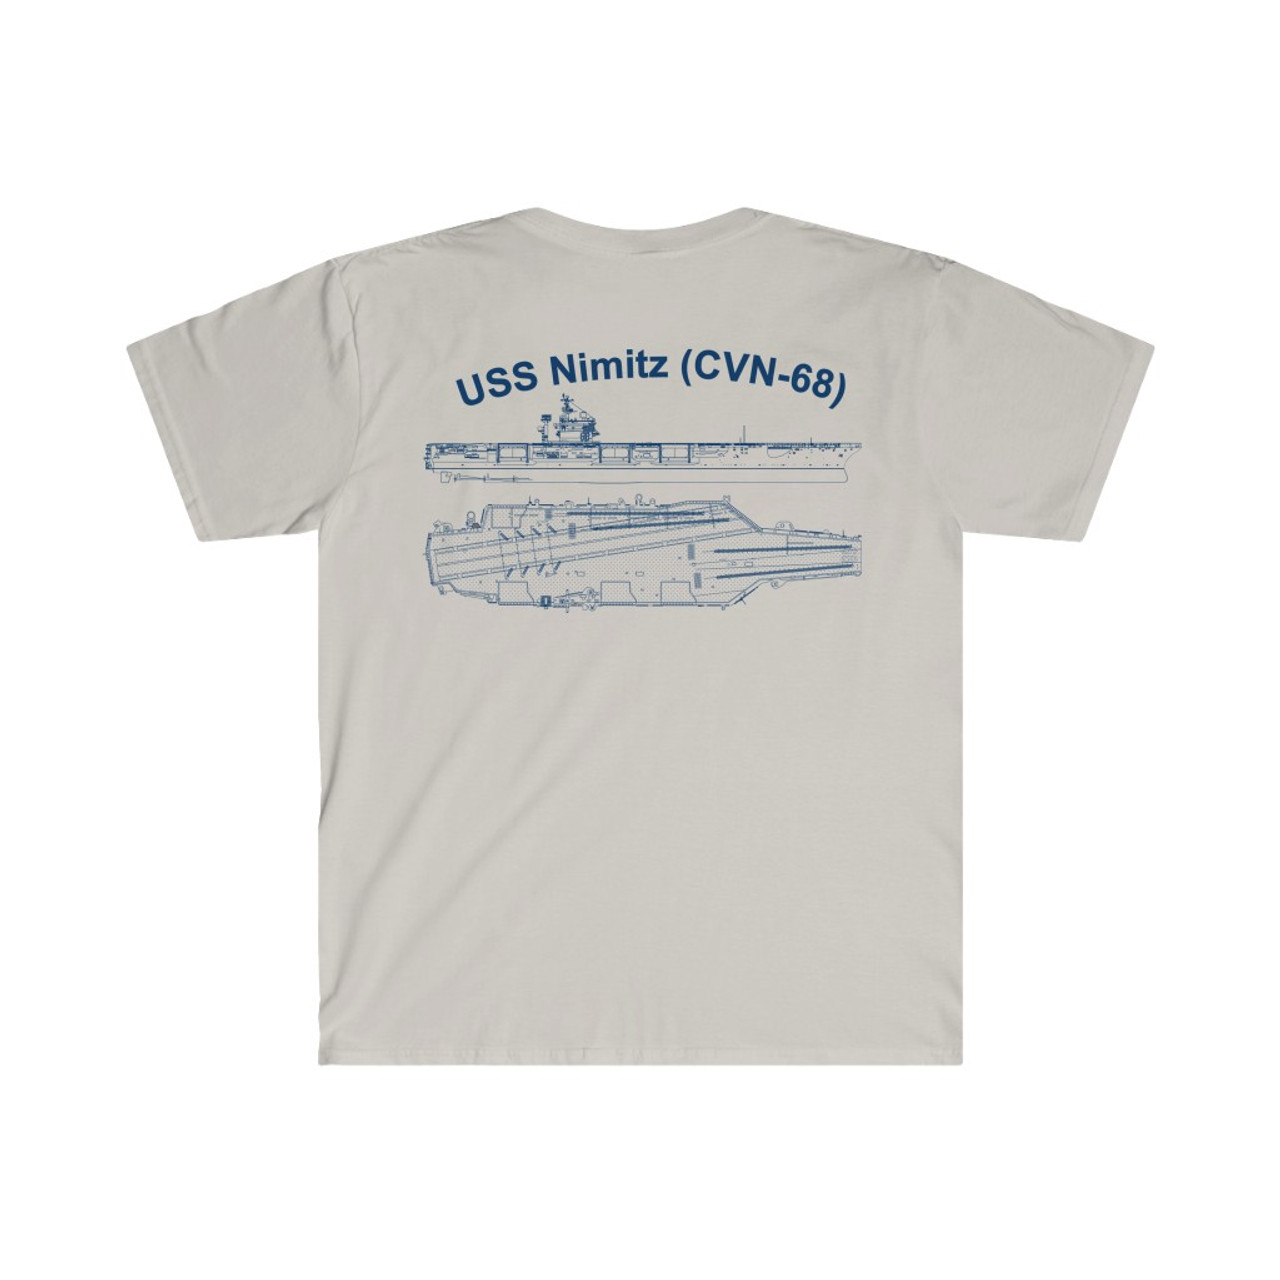 USS Nimitz (CVN-68) T-Shirt